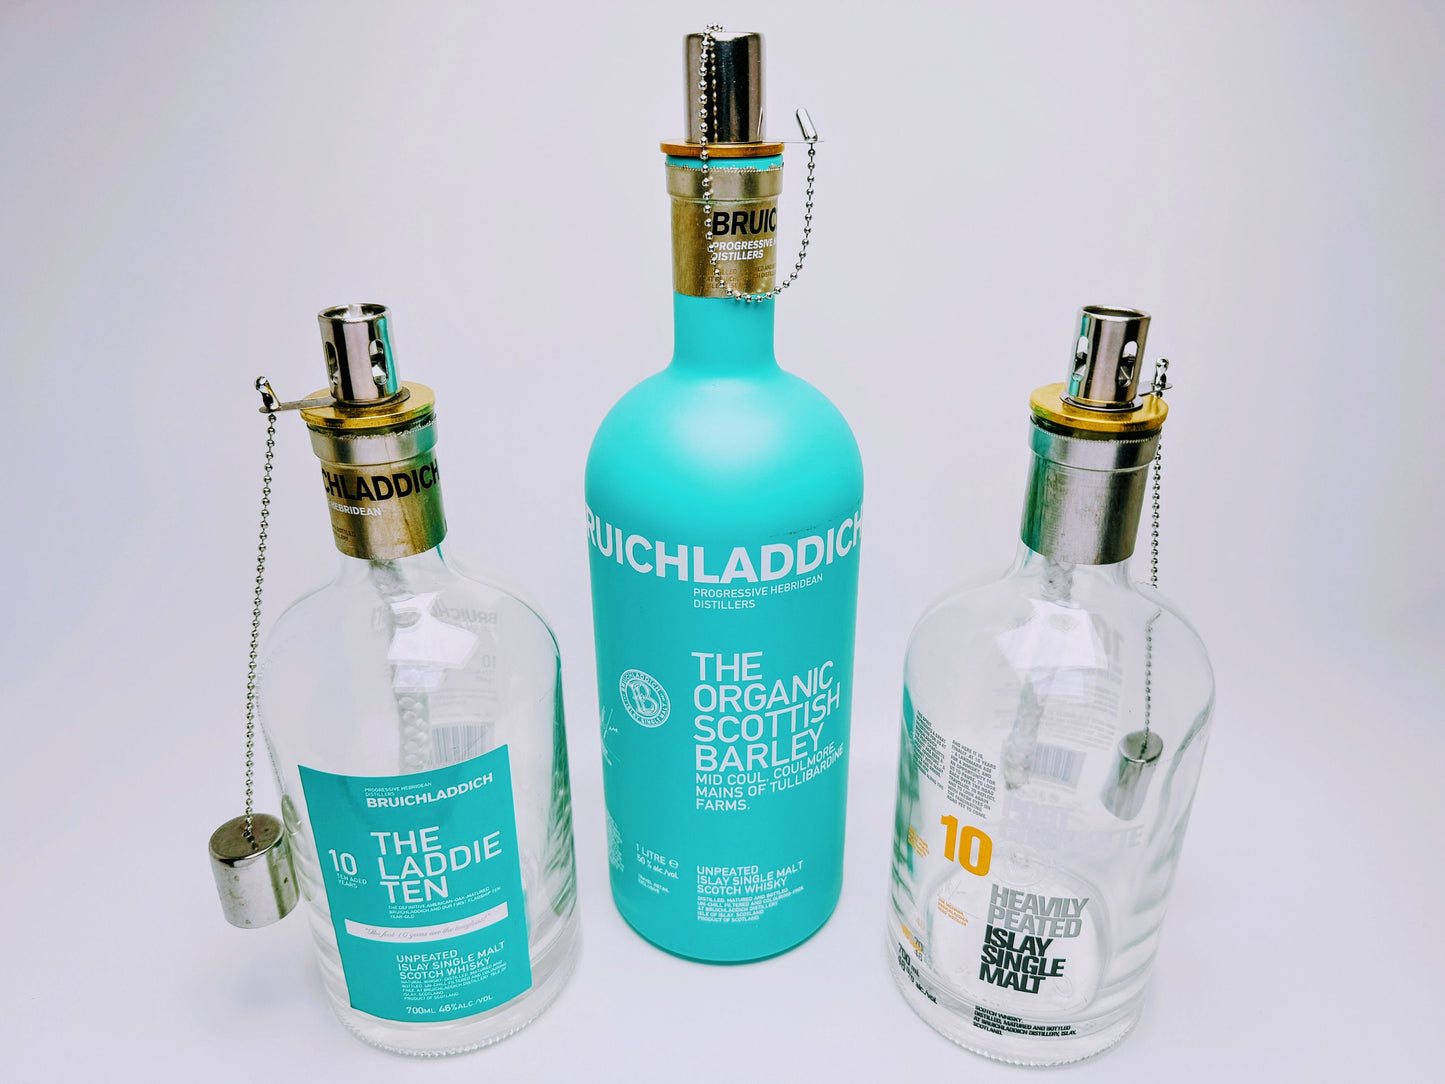 Whisky-Öllampe "Bruichladdich" | Handgemachte Öllampe aus Bruichladdich Flaschen | Upcycling | Individuell | Geschenk | Schottland | Deko